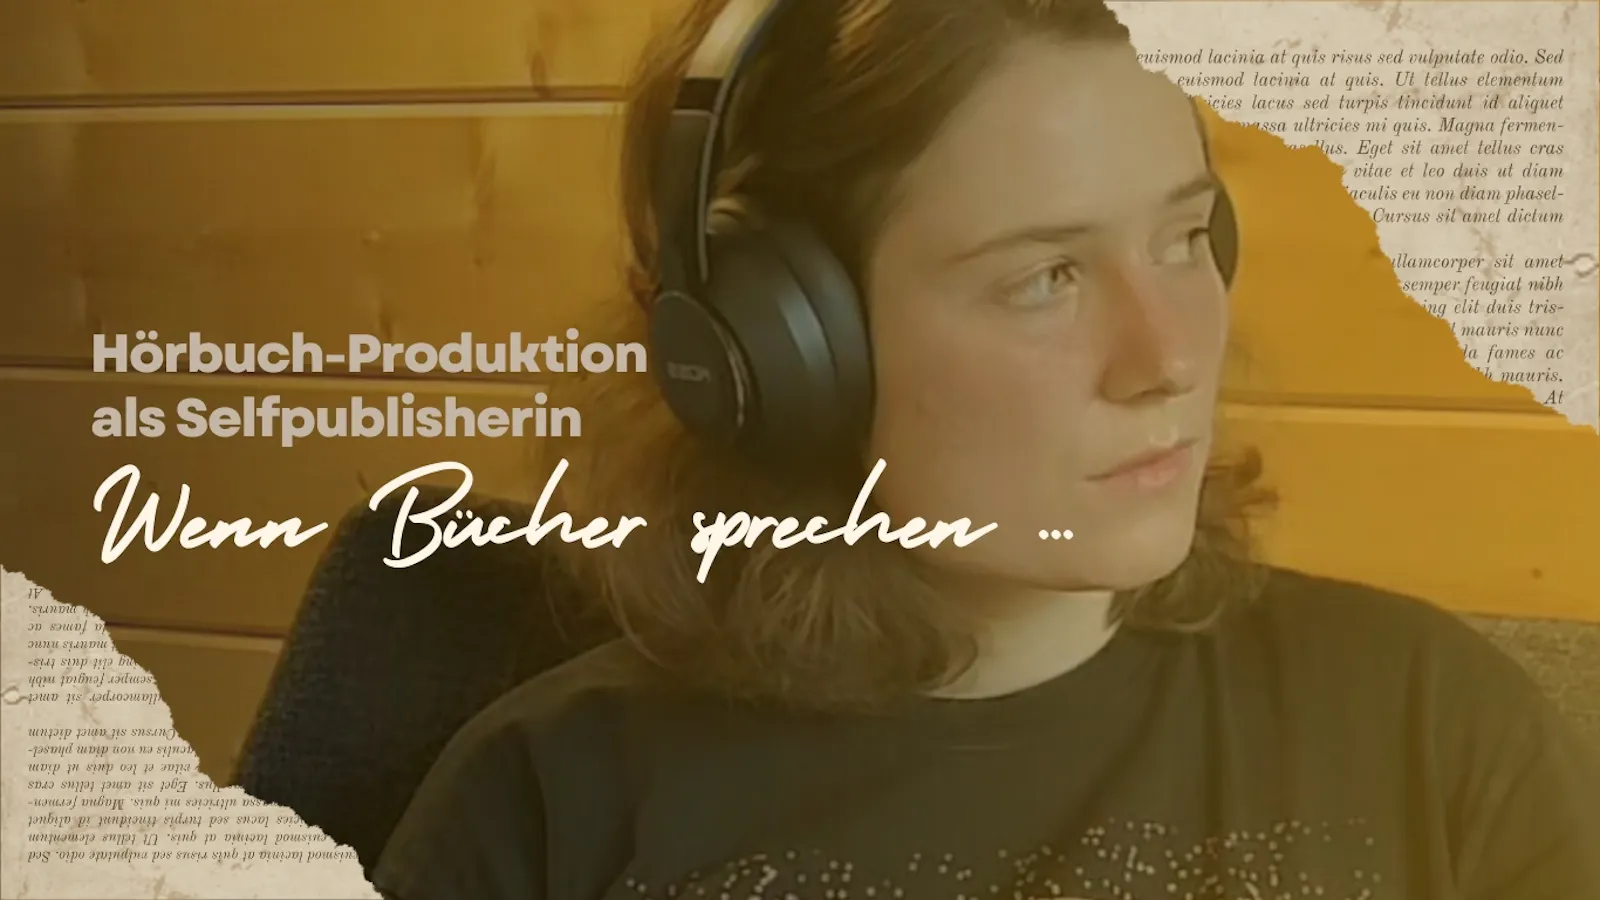 Das Bild zeigt die Autorin mit Kopfhörern. Daneben steht: "Hörbuch-Produktion als Selfpublisherin. Wenn Bücher sprechen ..."